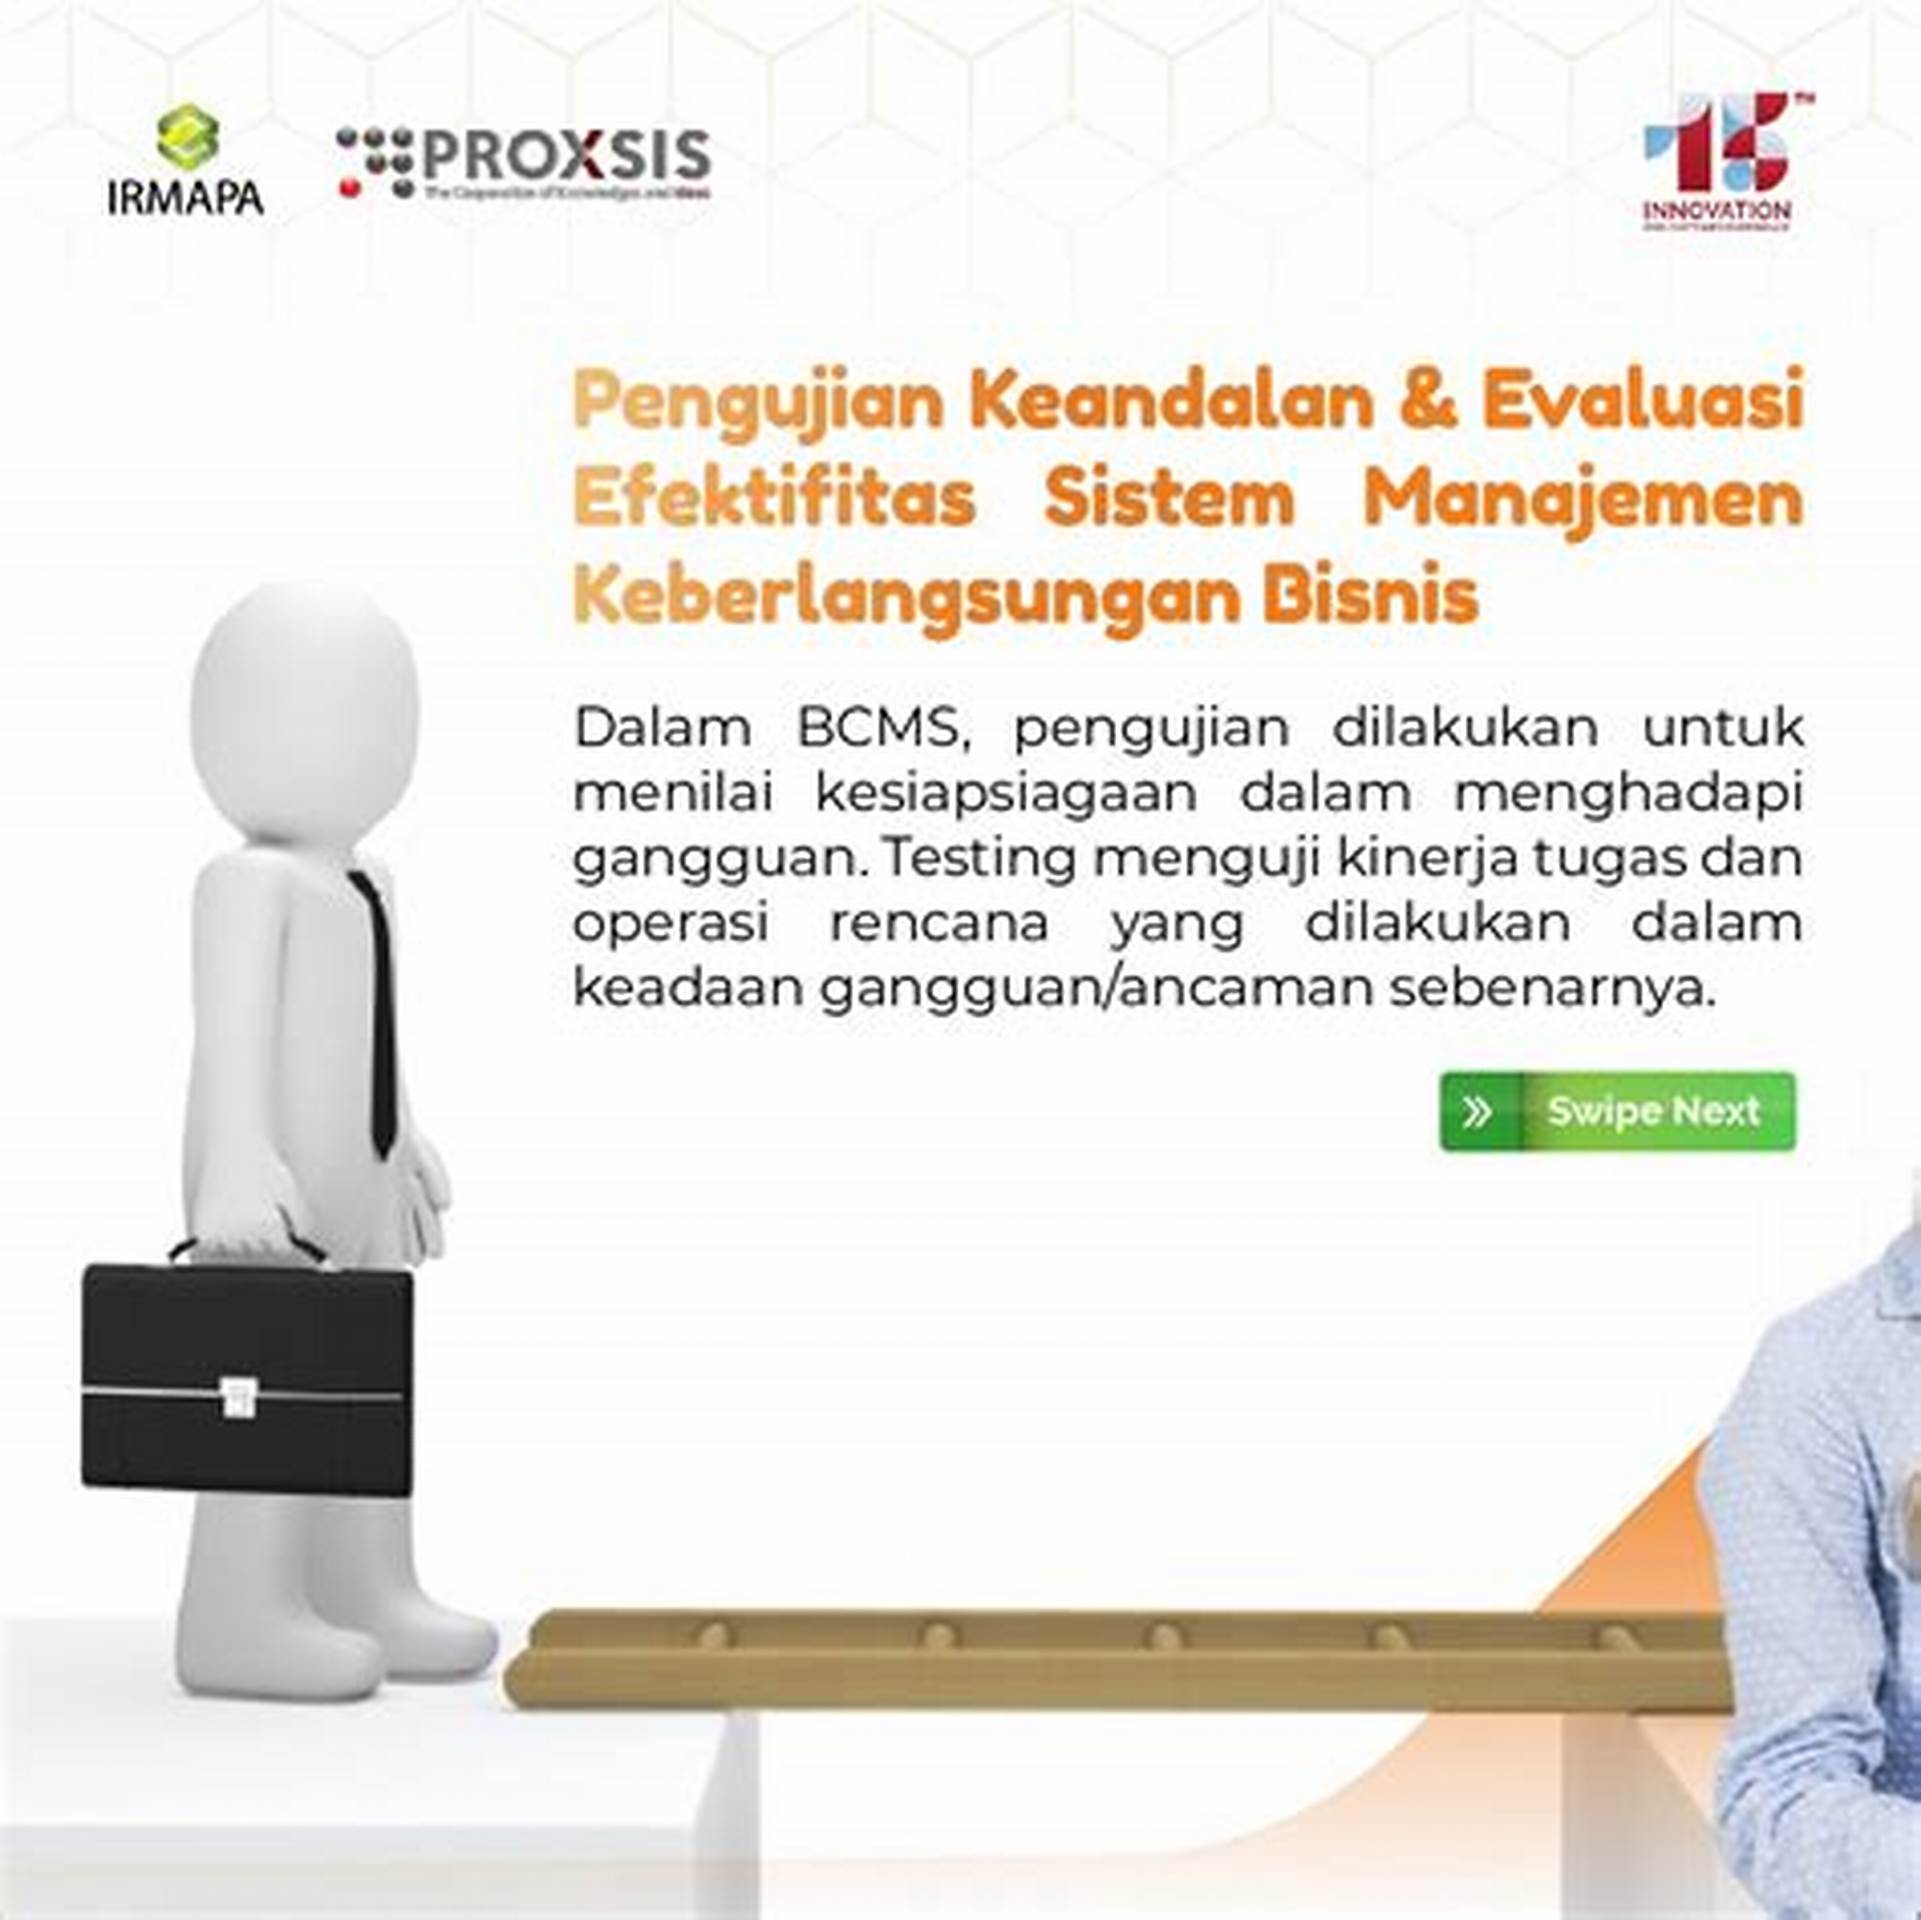 Fungsi Laporan Kegiatan Usaha dalam Pengelolaan Bisnis di Indonesia